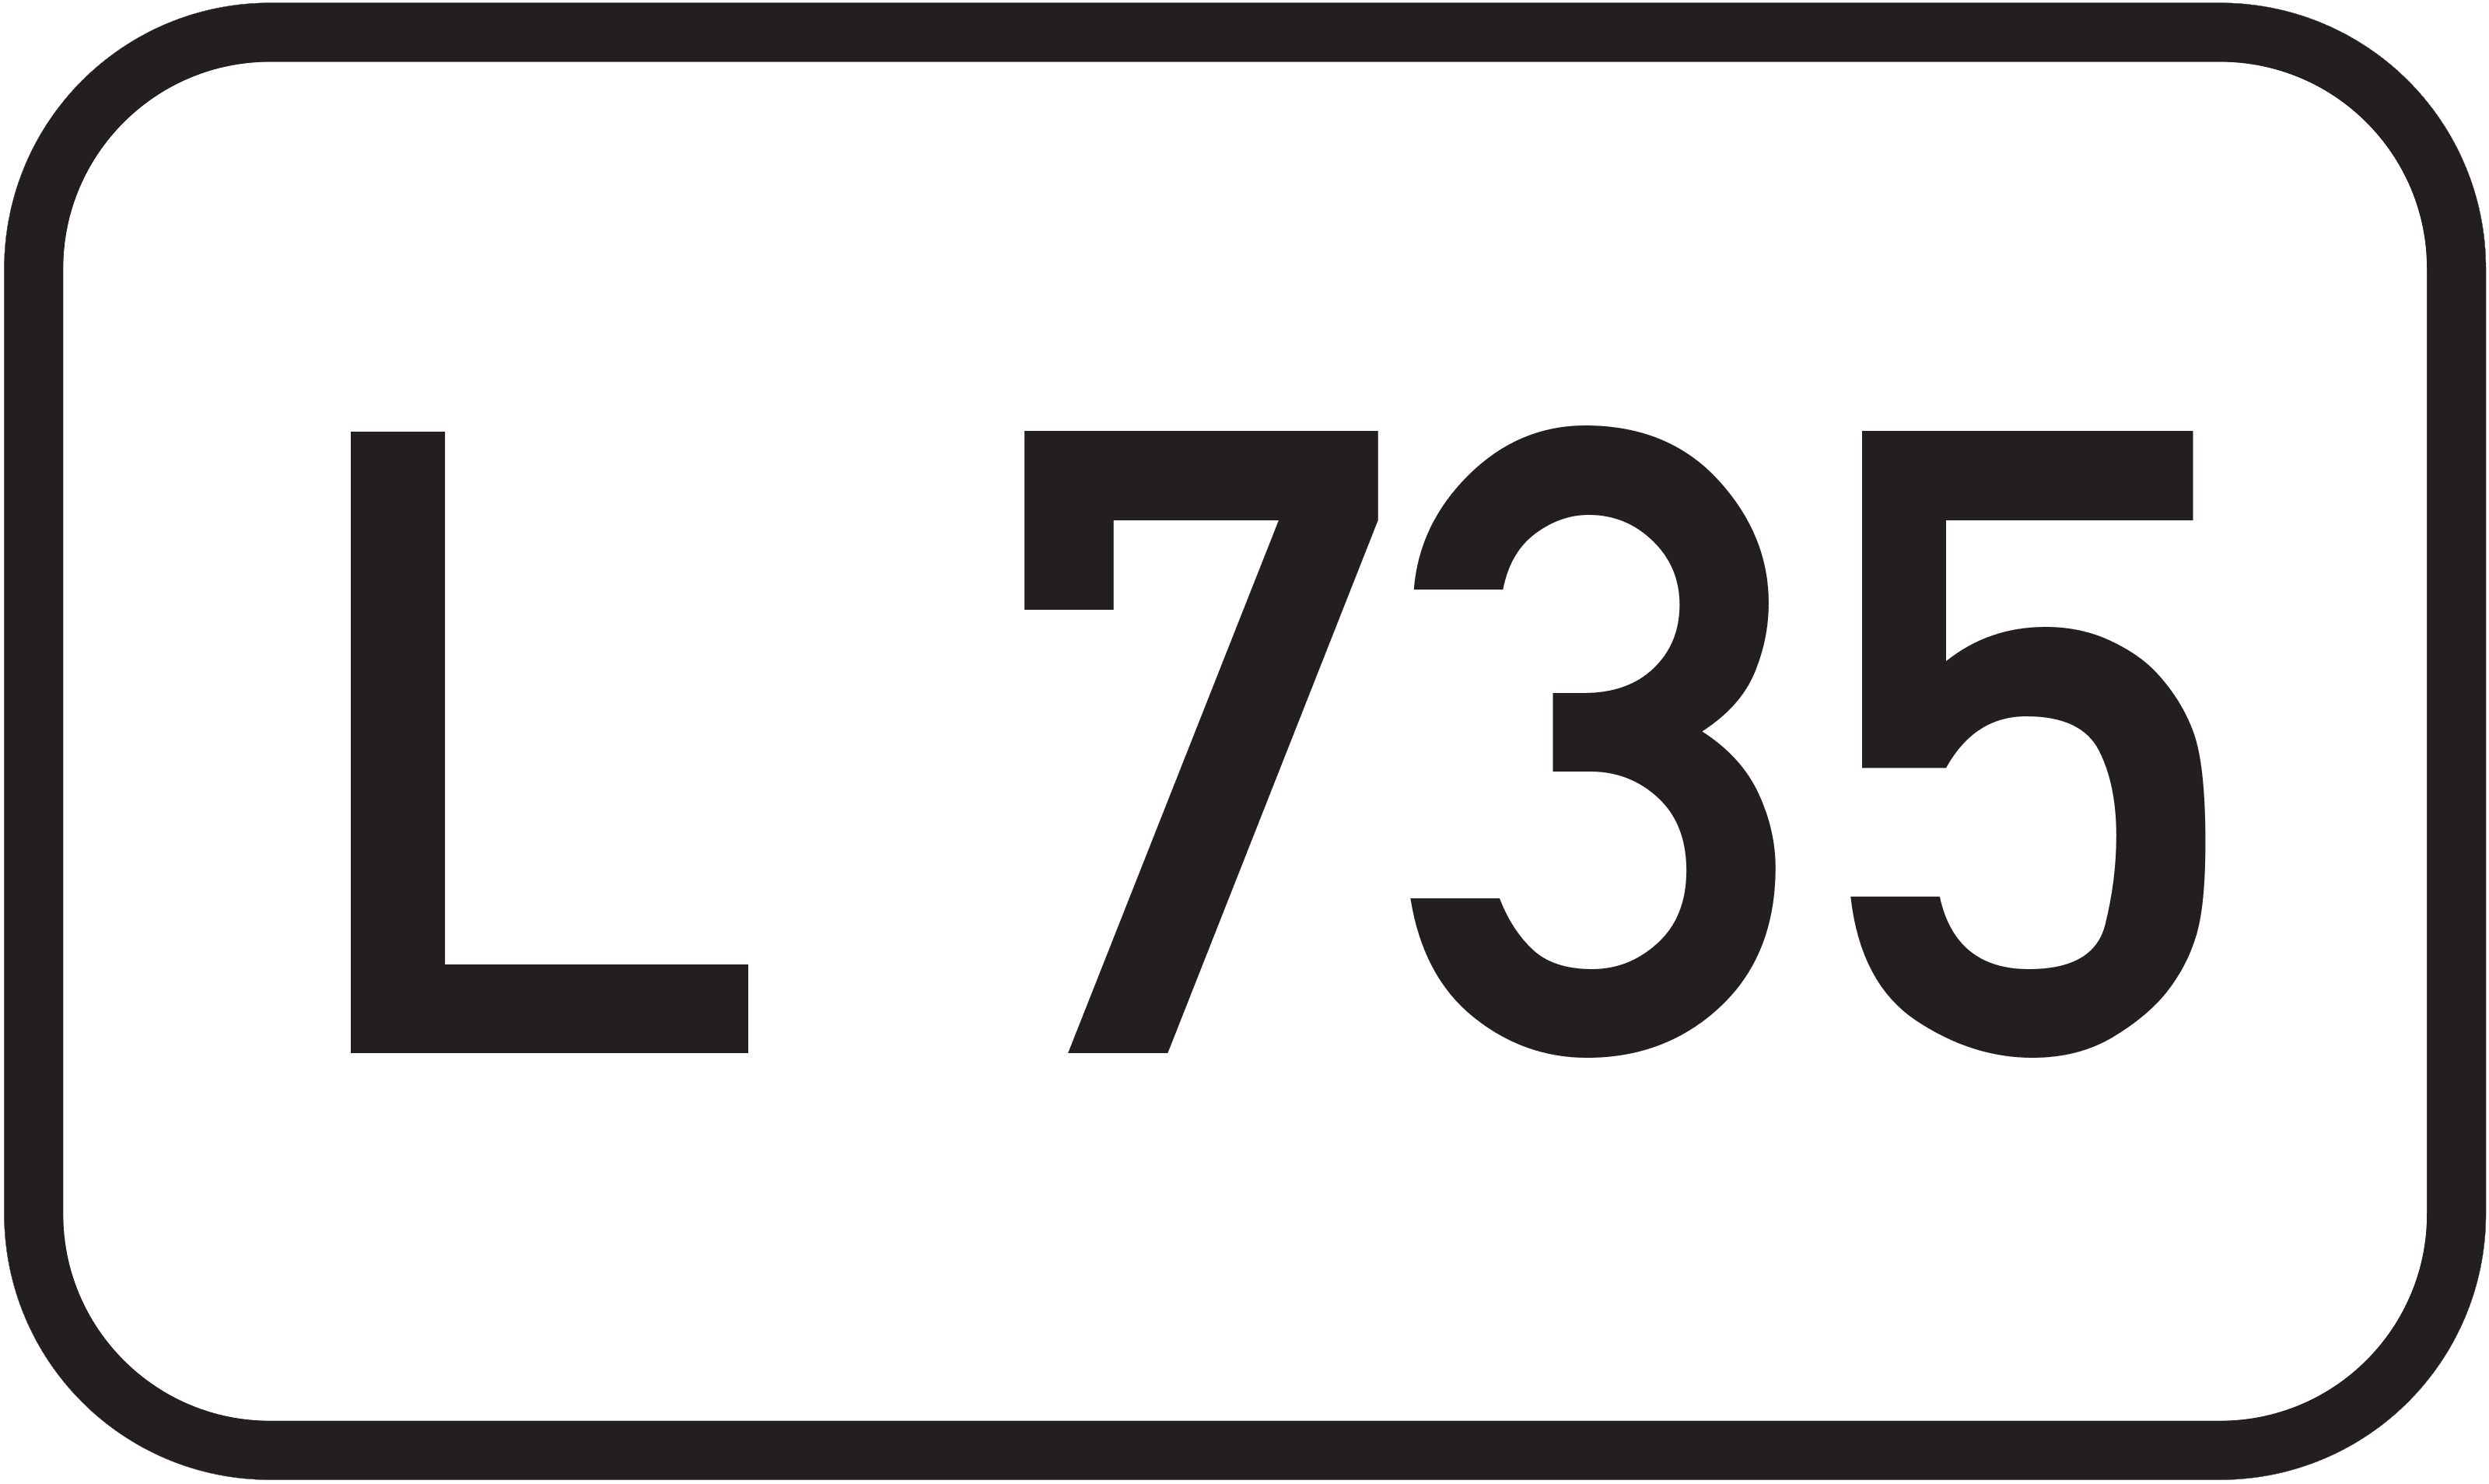 Landesstraße L 735